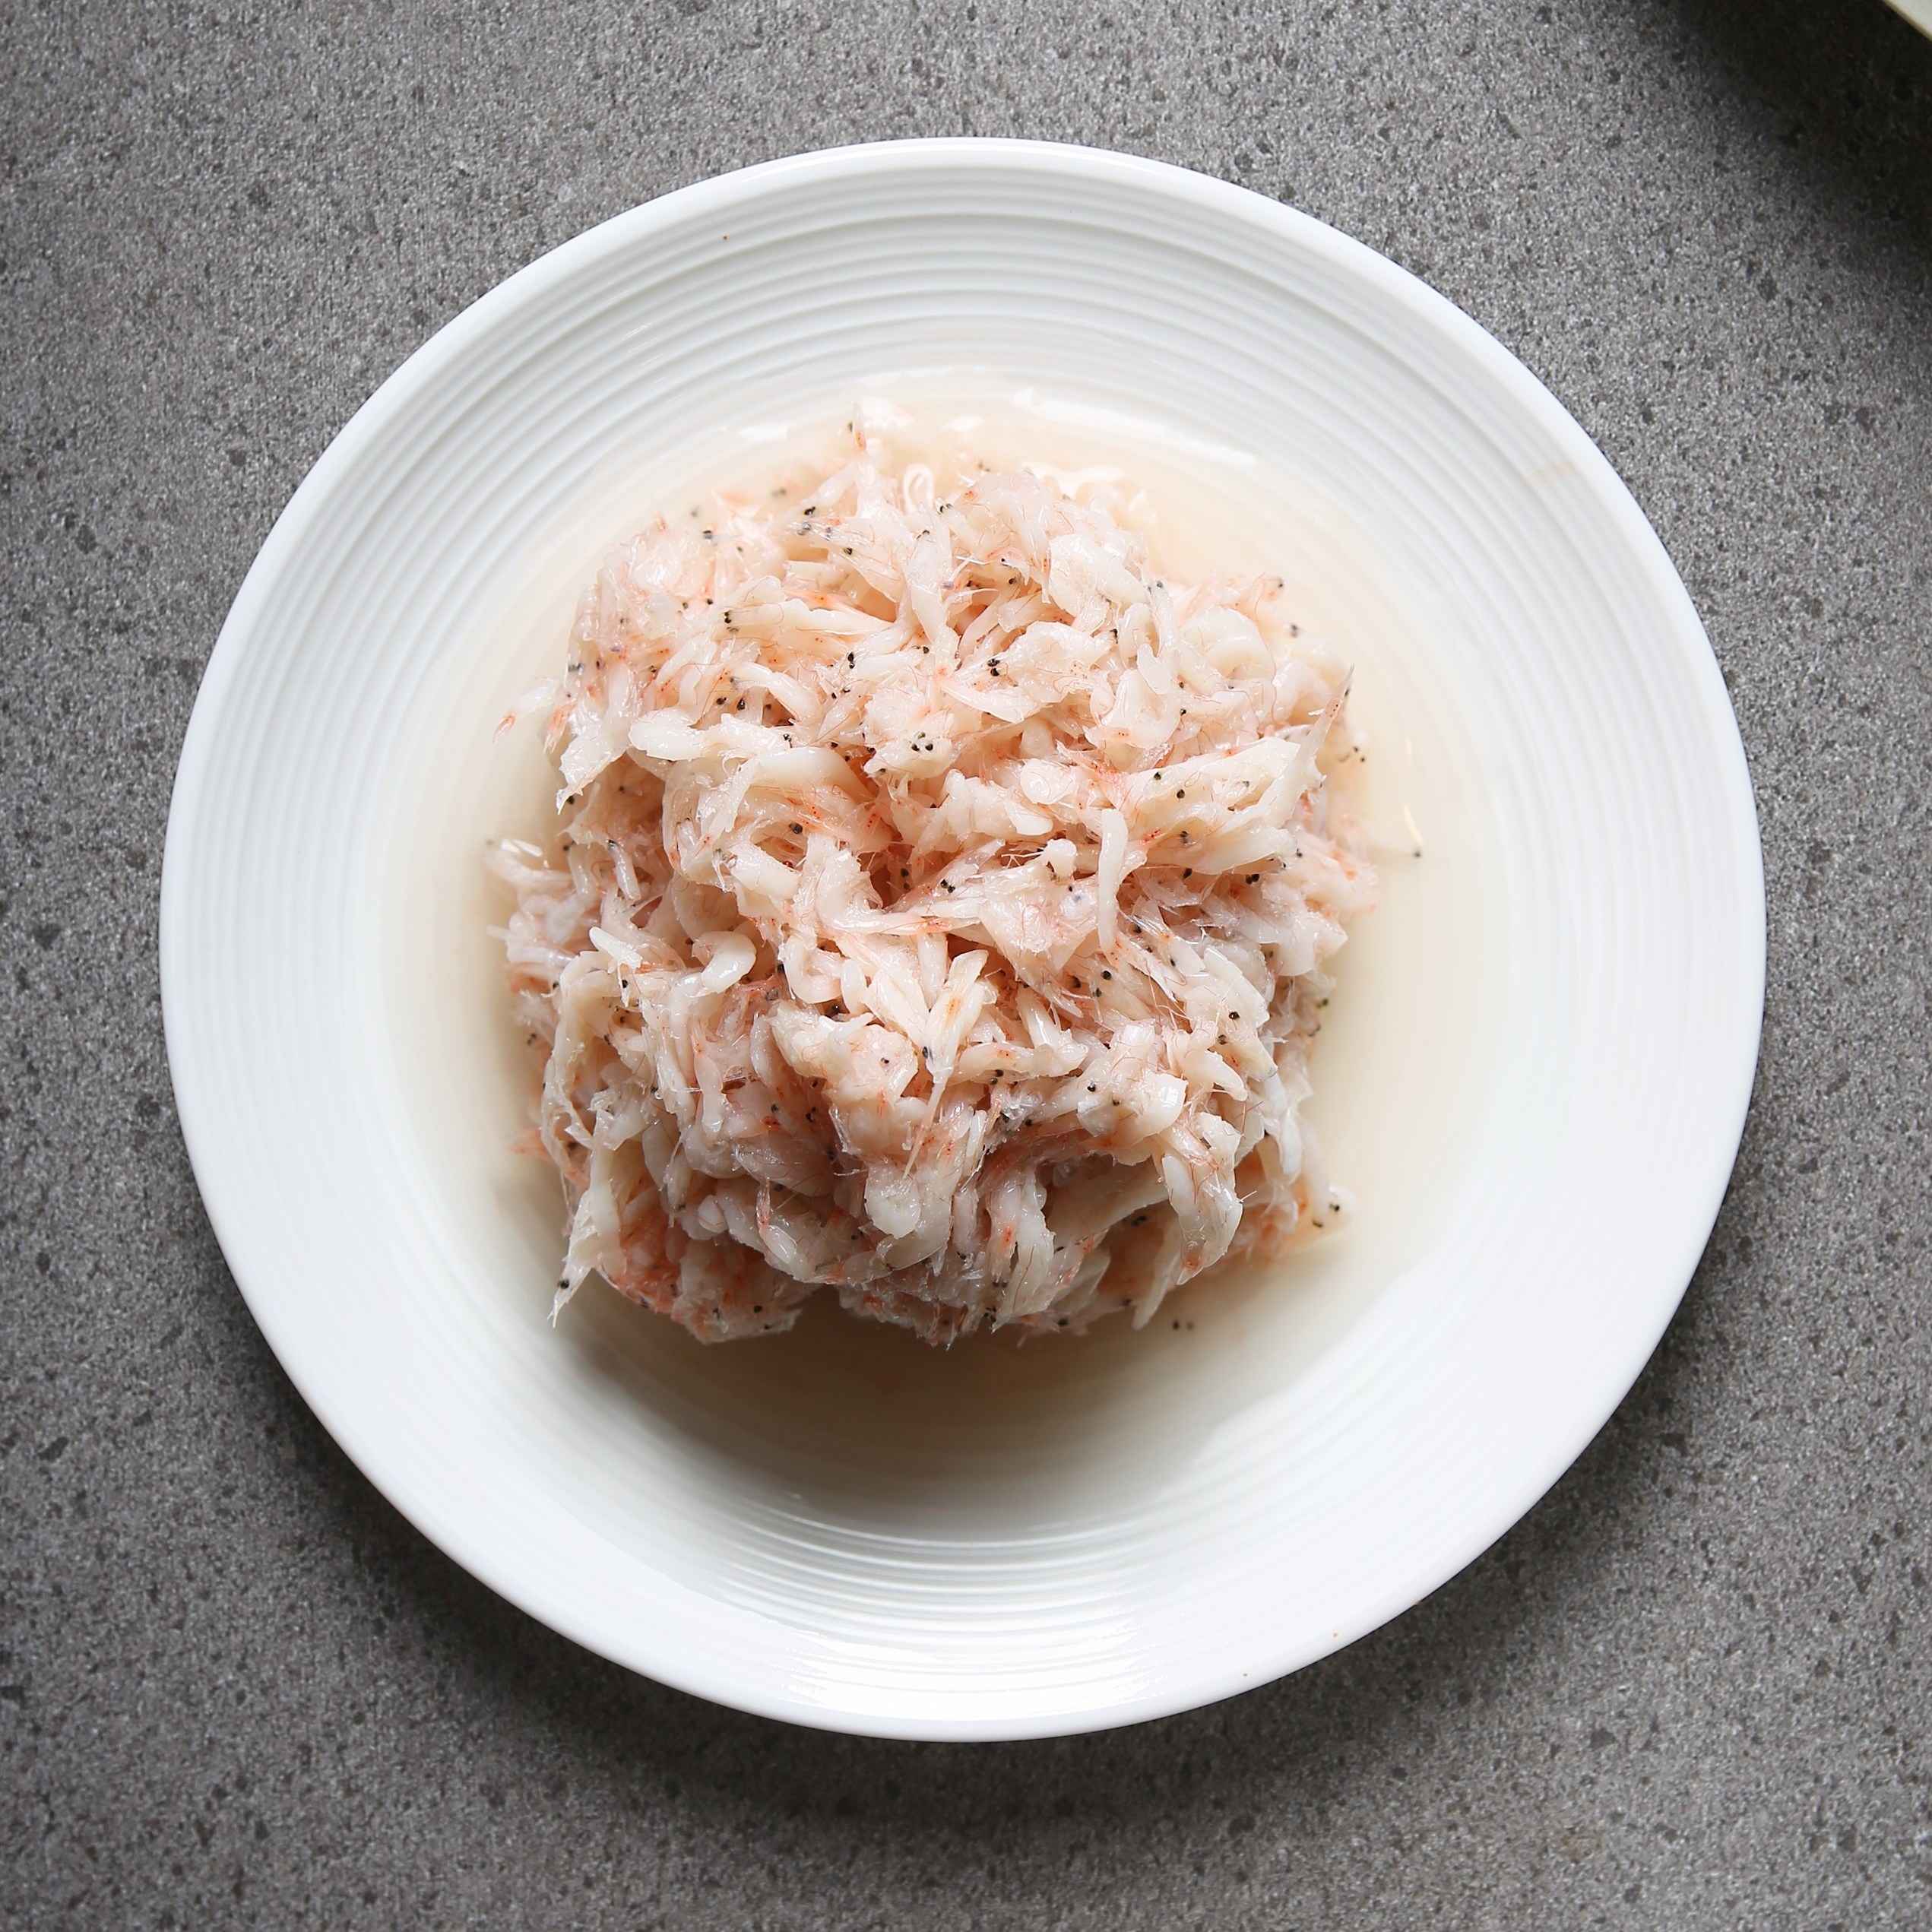 오성상회 젓갈의 정석 참을 수 없는 감칠맛의 끝판 국내산 새우젓, 1개, 1kg 